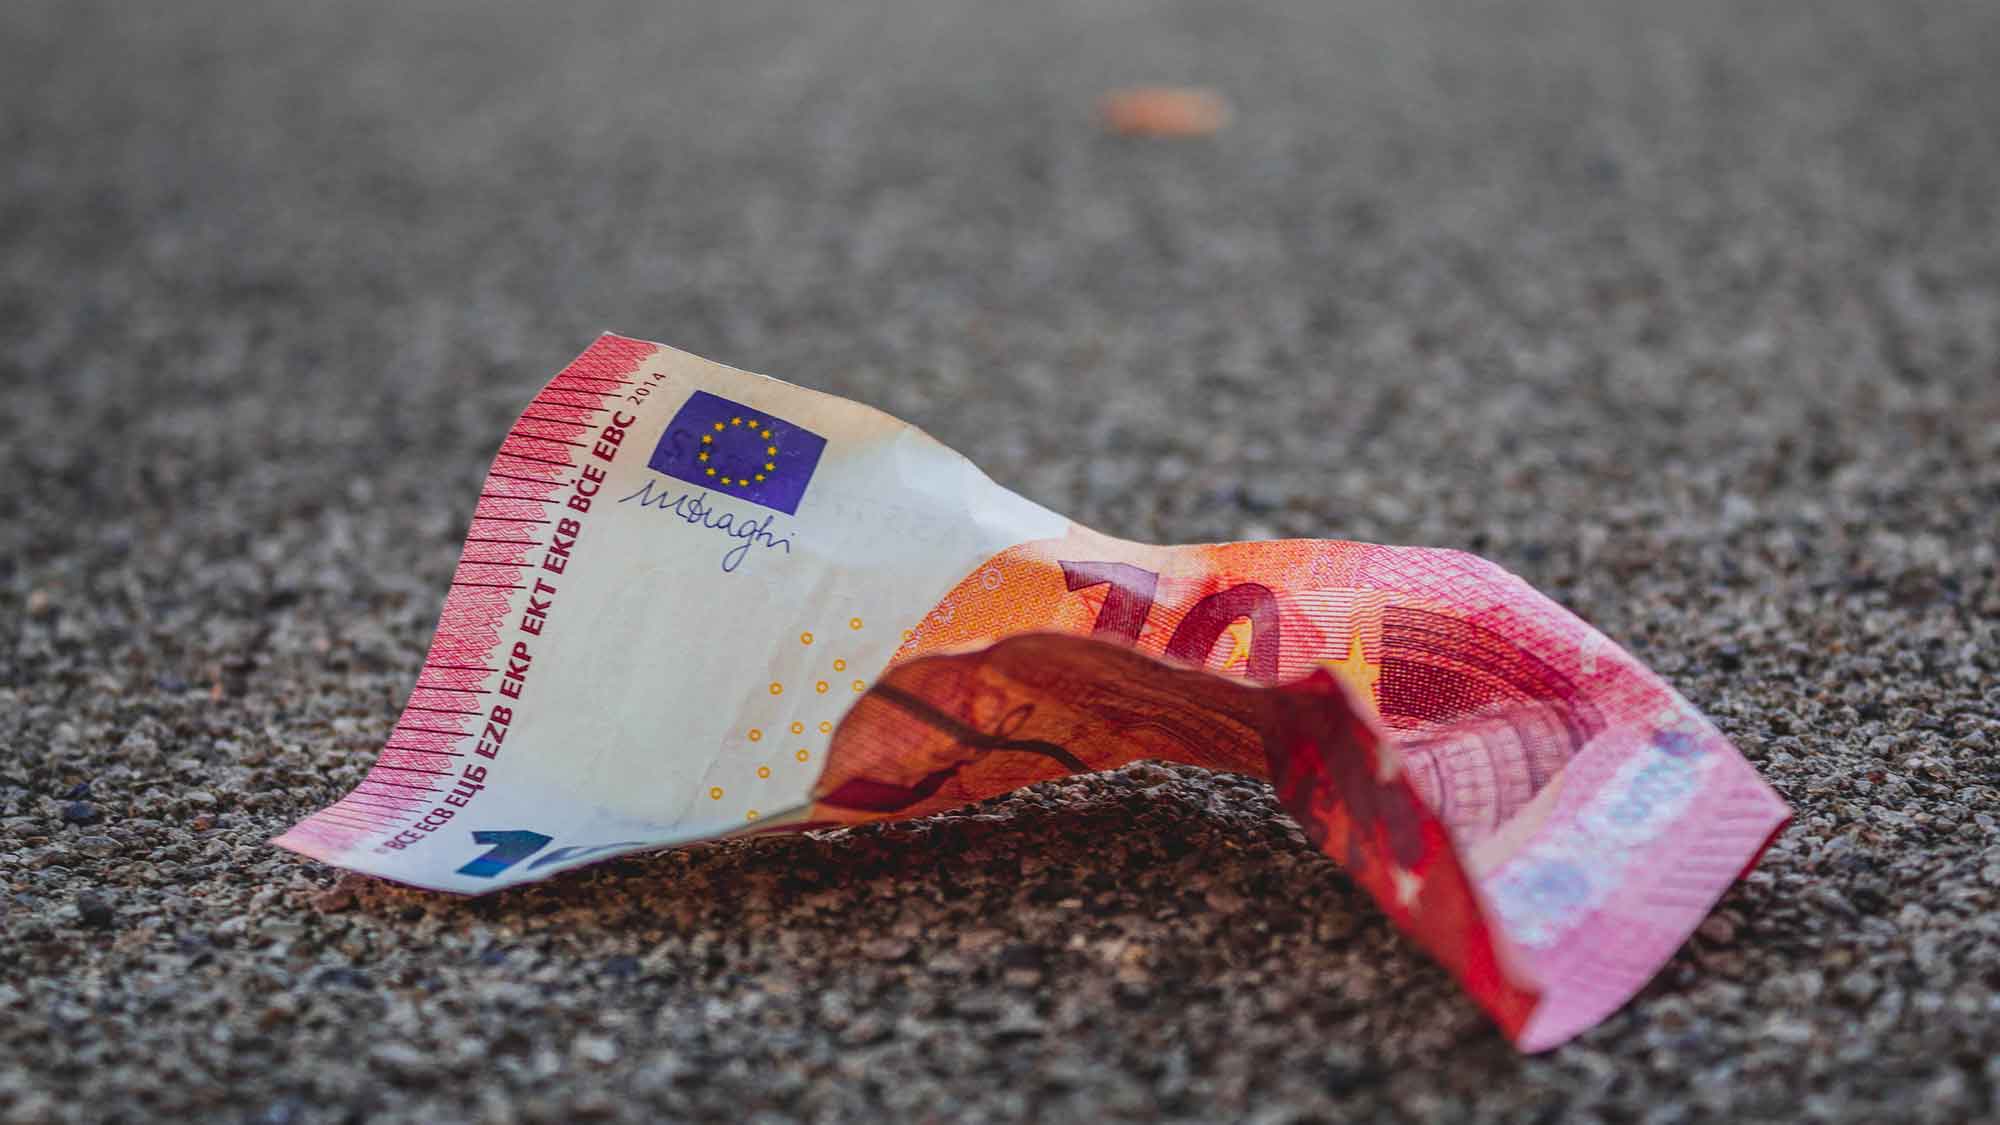 Hans Böckler Stiftung: Inflationsunterschiede zwischen Haushaltstypen gering – weiter sinkende Teuerung absehbar